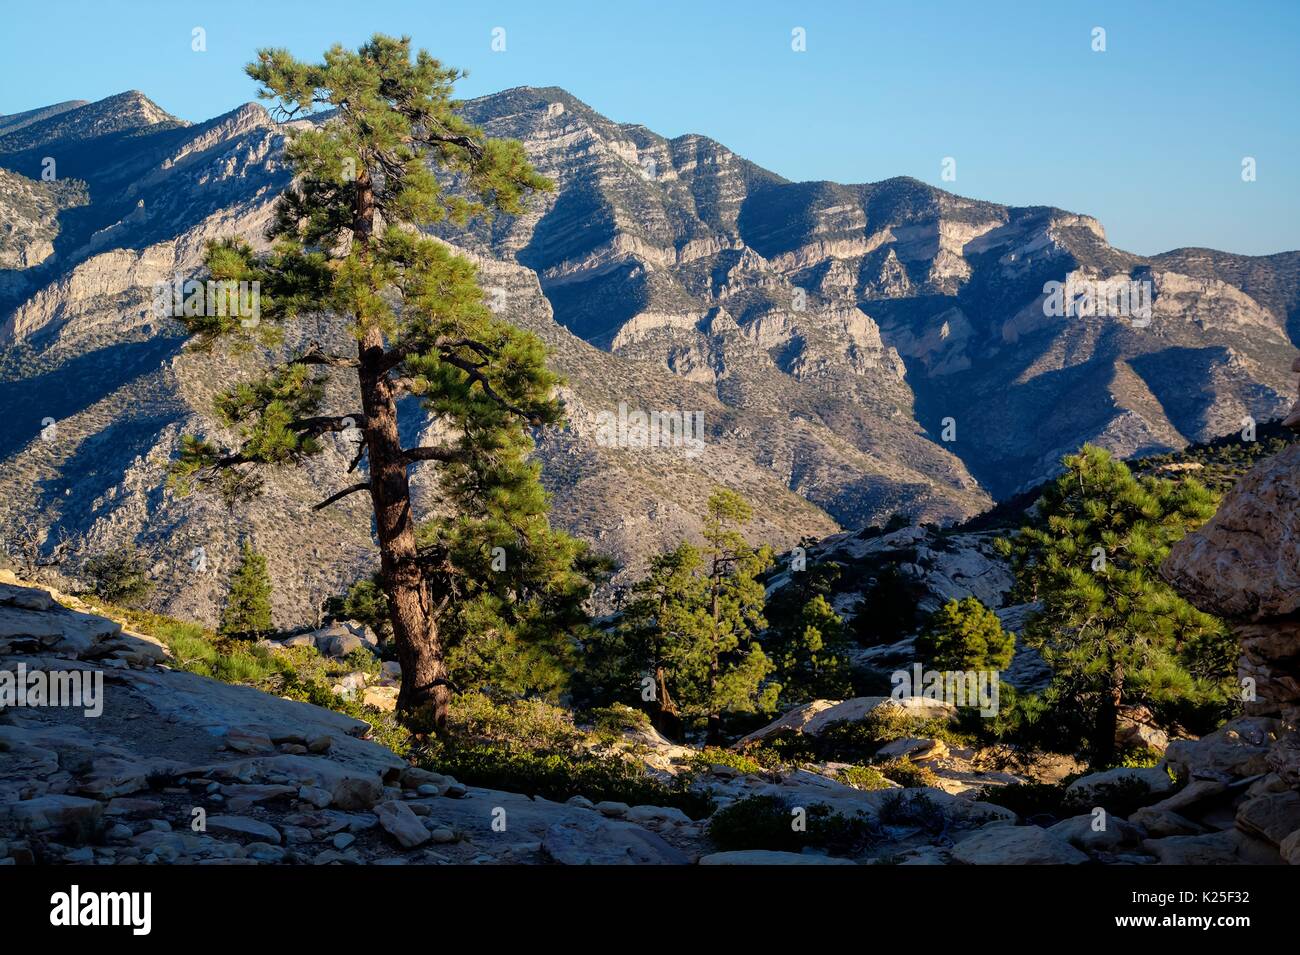 Les canyons, crêtes et sommets de montagnes et de pins pinyon composent le la Madre Mountain Wilderness dans le Red Rock Canyon National Conservation Area, 27 septembre 2016 près de Las Vegas, Nevada. Banque D'Images